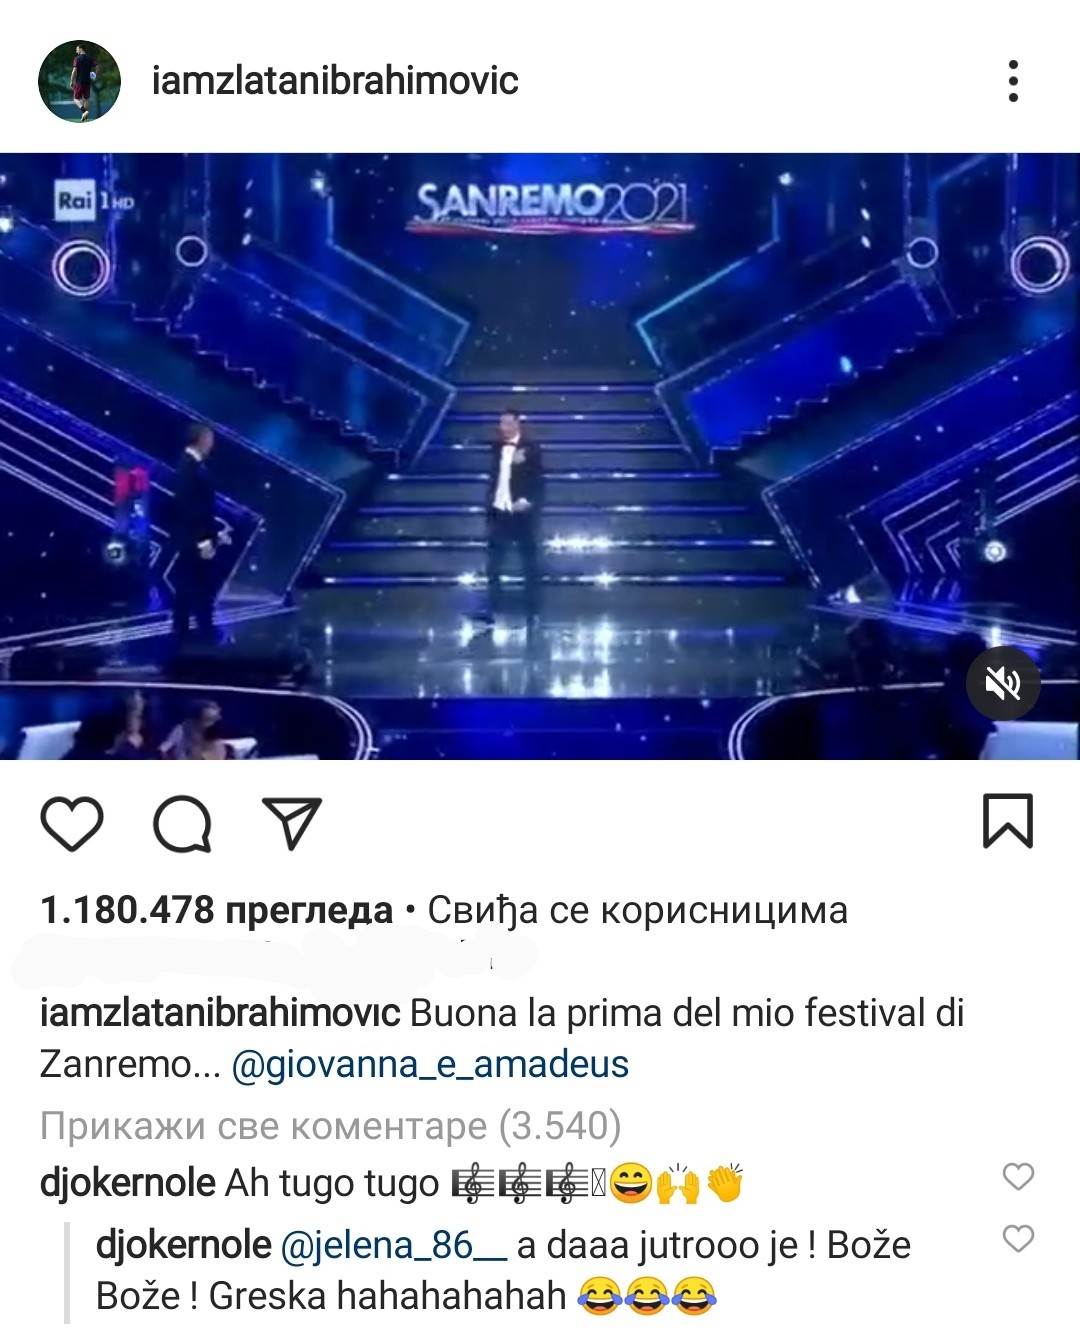  ibrahimovic instagram novak djokovic pogresna pesma komentar 